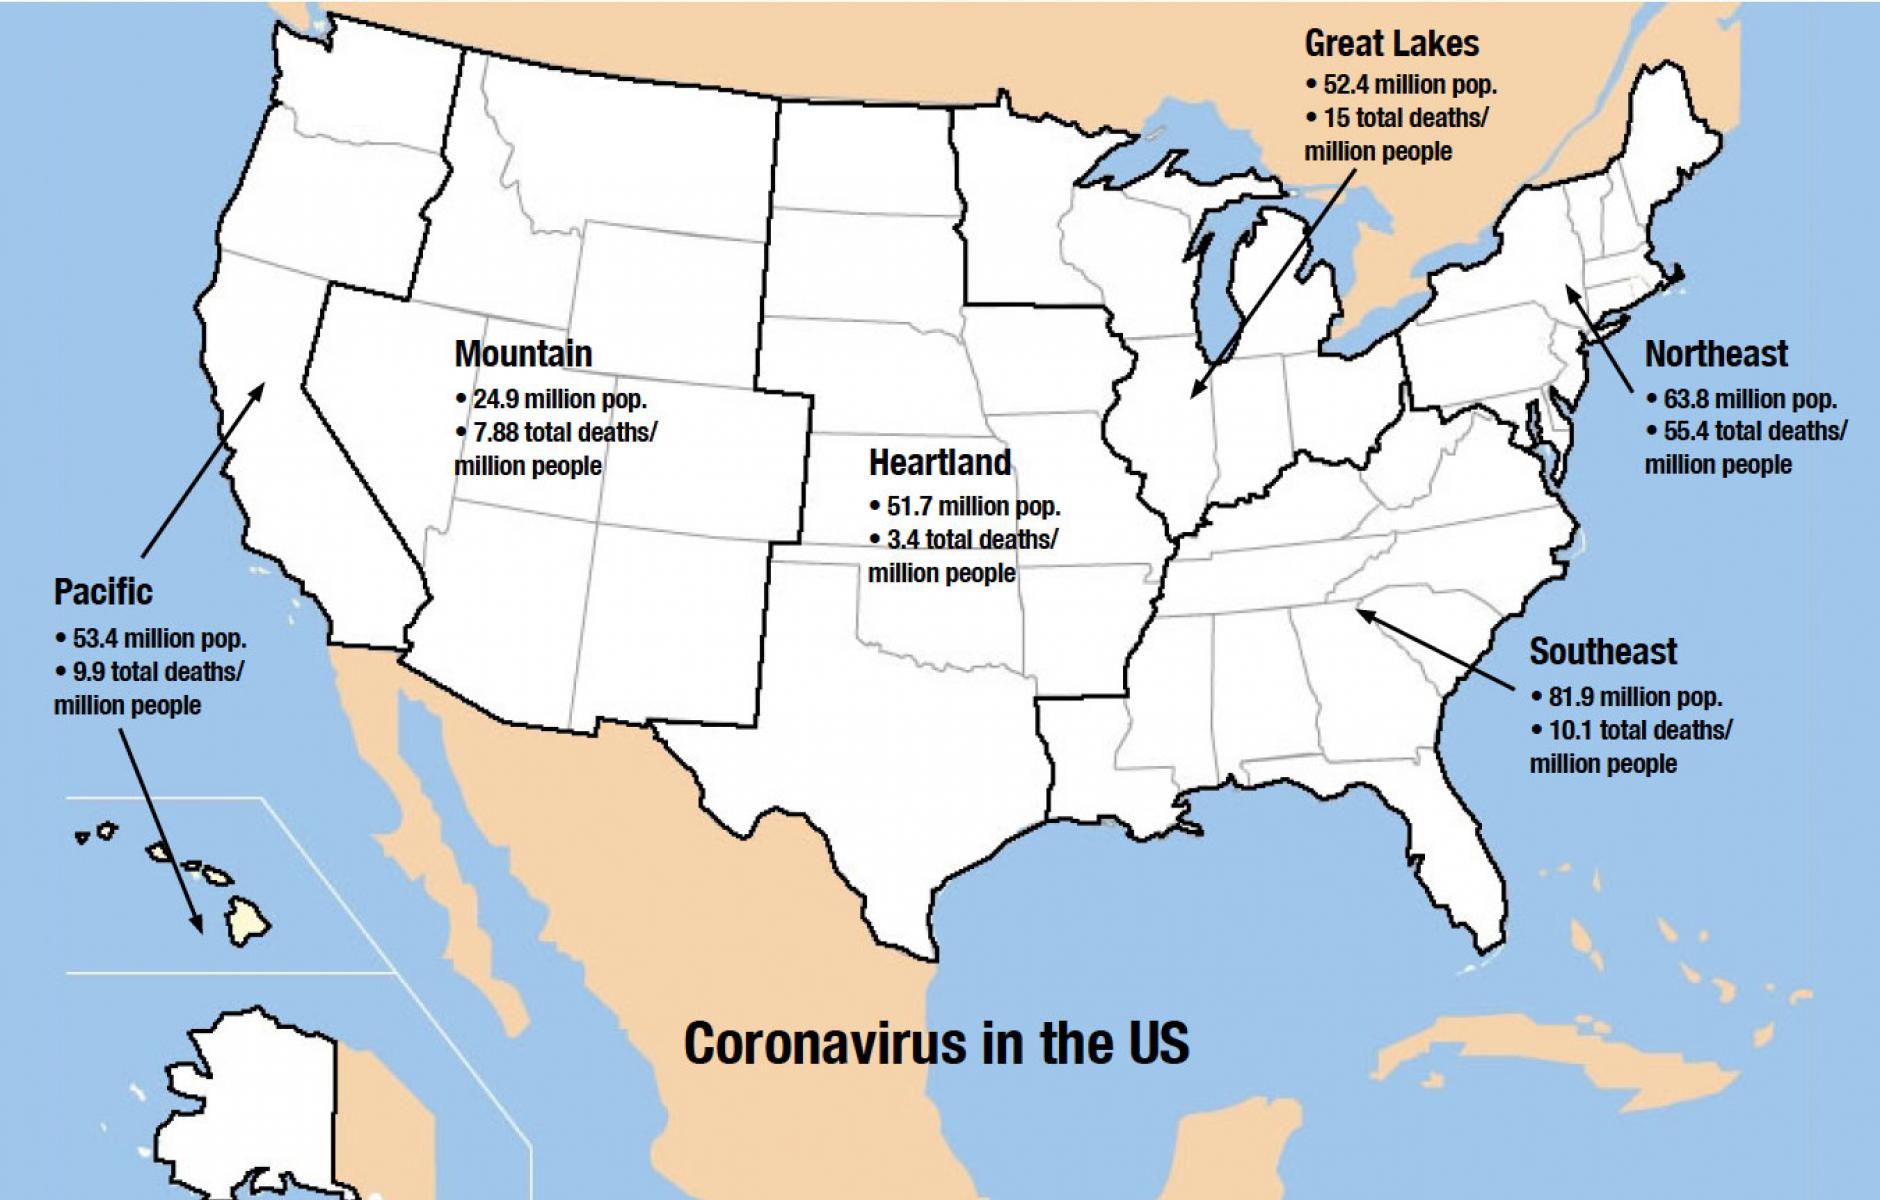 Coronavirus in the U.S.